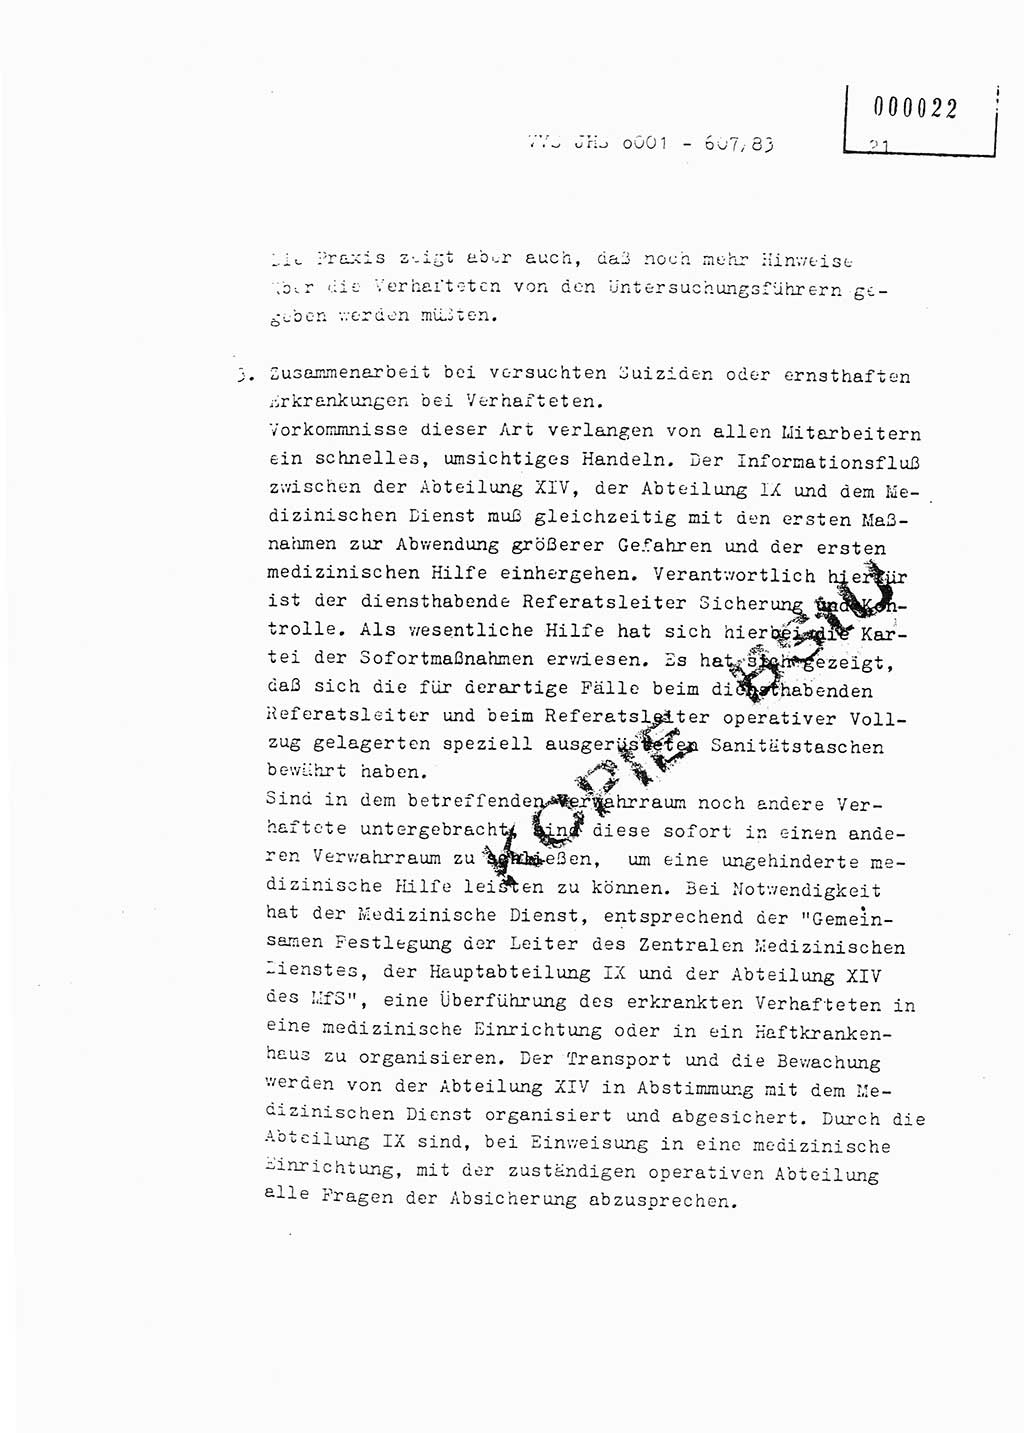 Fachschulabschlußarbeit Oberleutnant Hans-Joachim Saltmann (BV Rostock Abt. ⅩⅣ), Ministerium für Staatssicherheit (MfS) [Deutsche Demokratische Republik (DDR)], Juristische Hochschule (JHS), Vertrauliche Verschlußsache (VVS) o001-607/83, Potsdam 1983, Seite 21 (FS-Abschl.-Arb. MfS DDR JHS VVS o001-607/83 1983, S. 21)